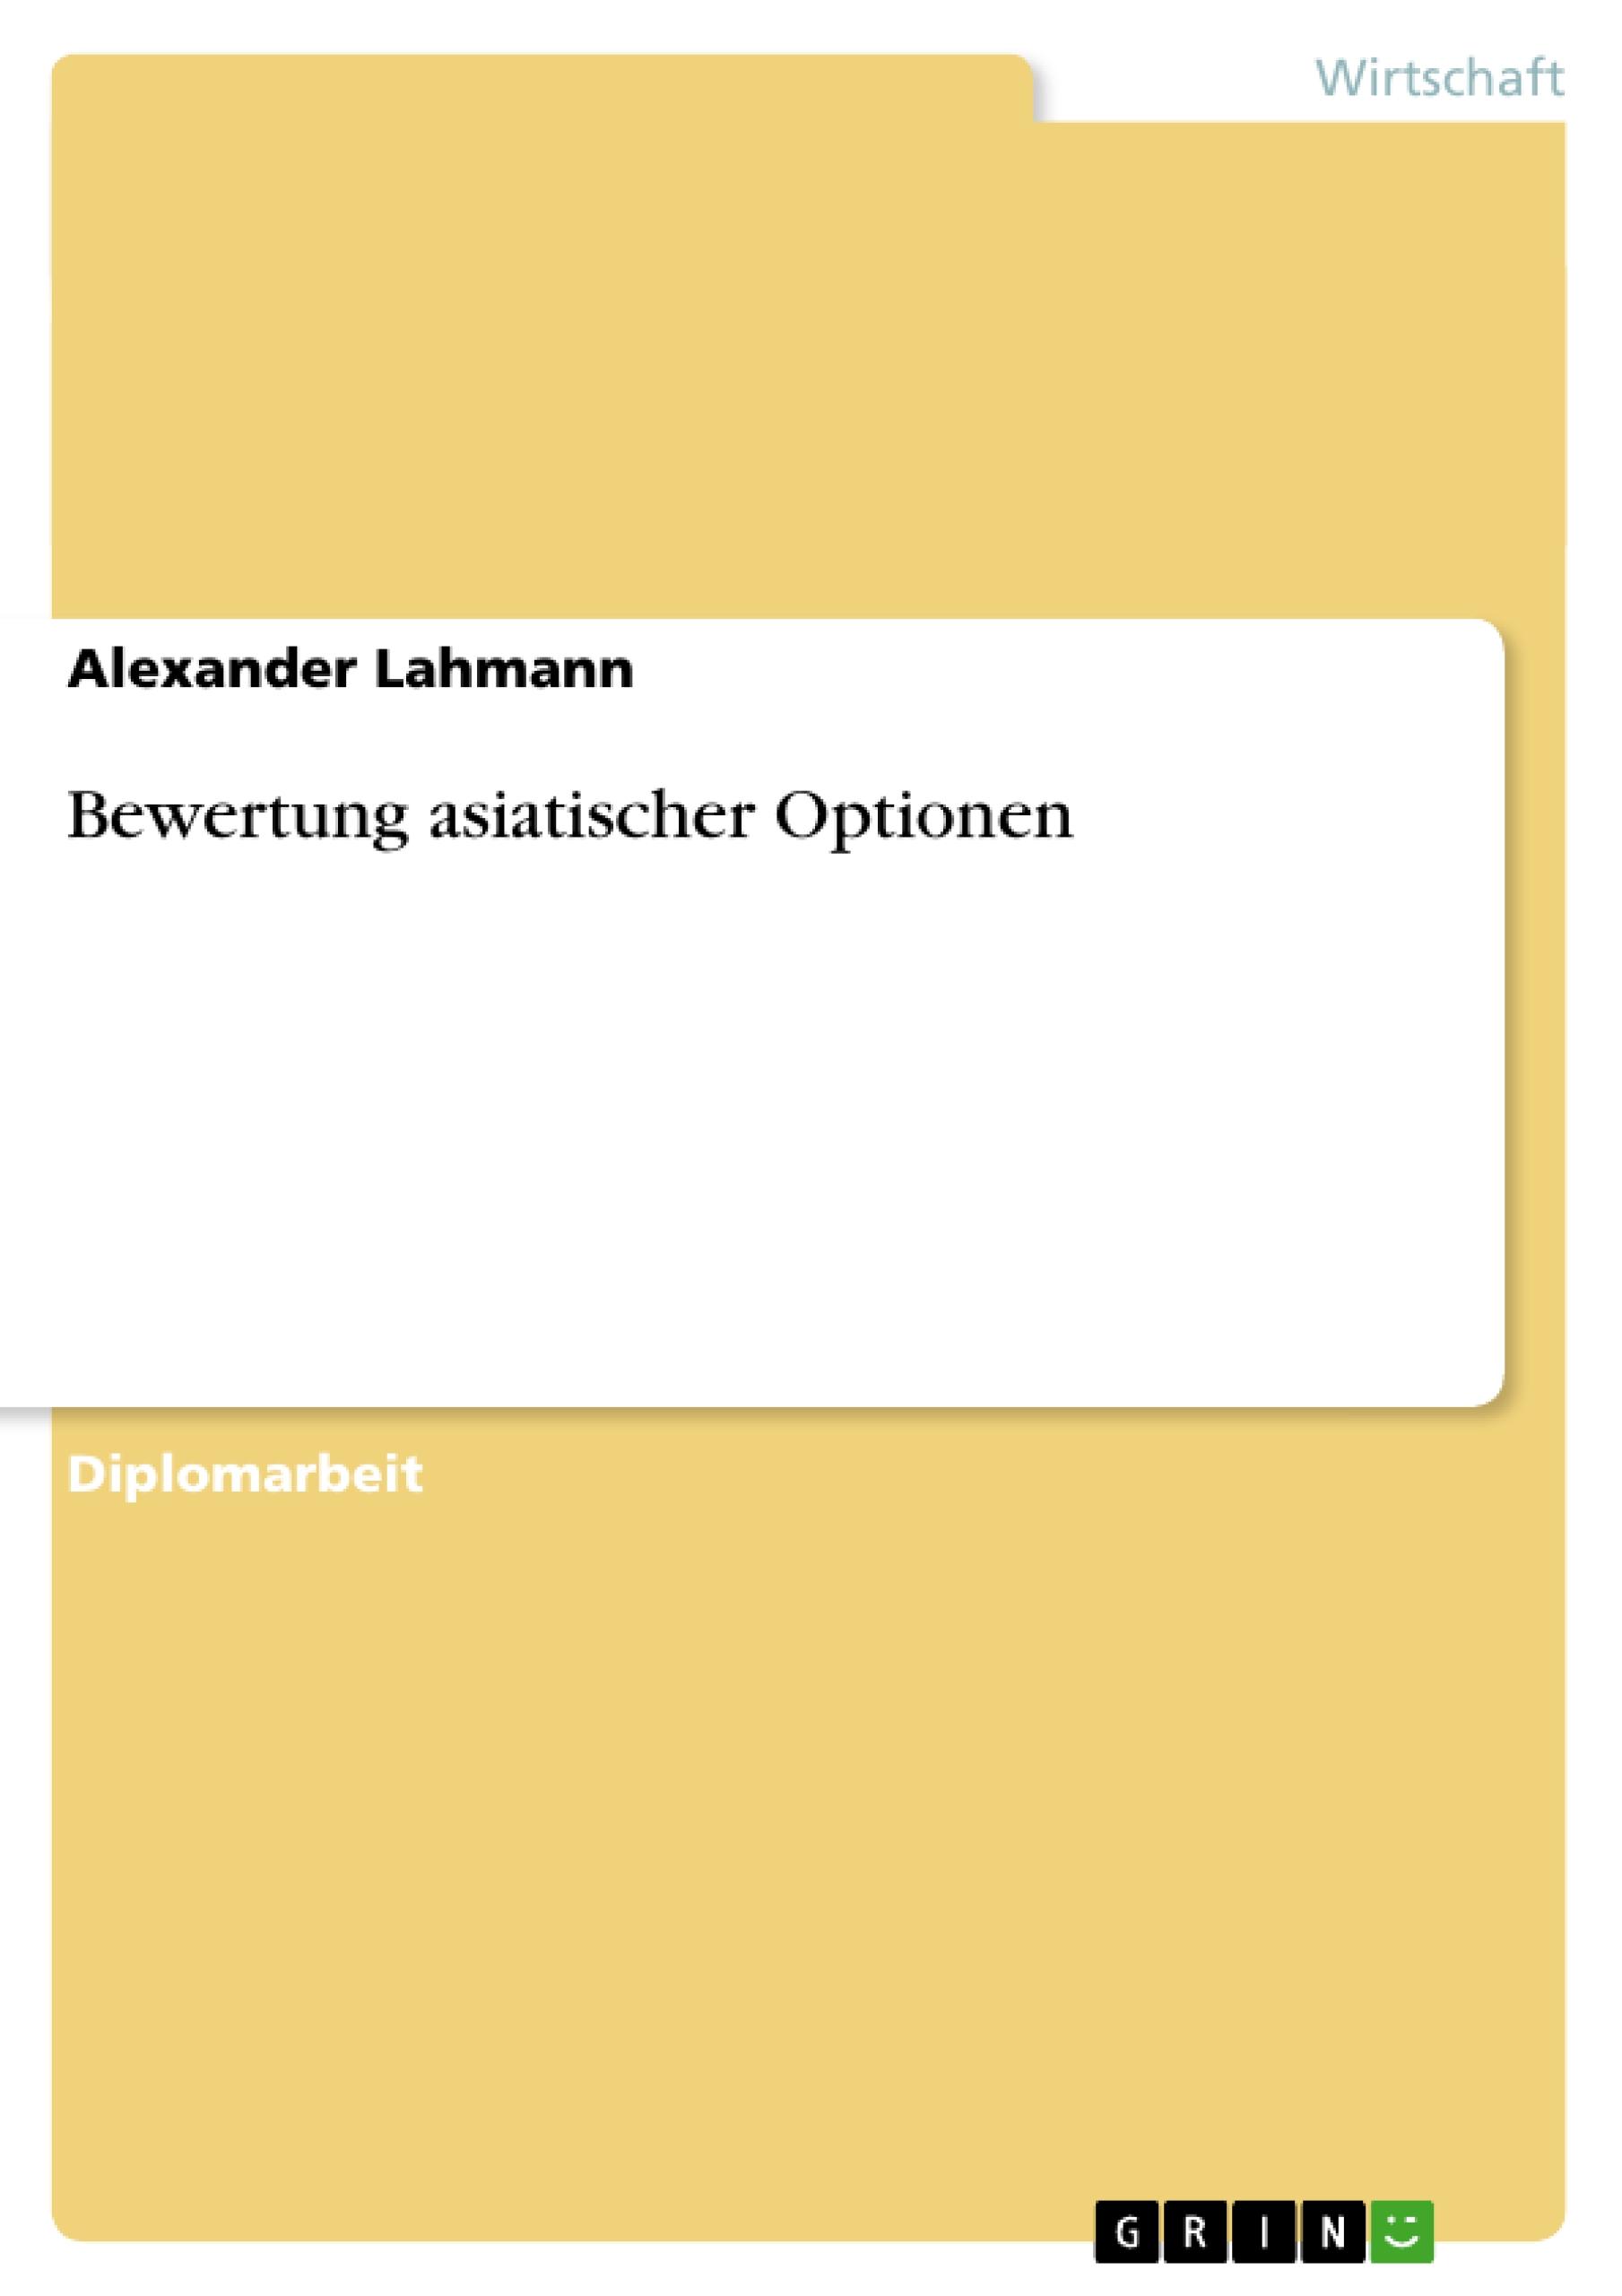 Bewertung asiatischer Optionen - Lahmann, Alexander